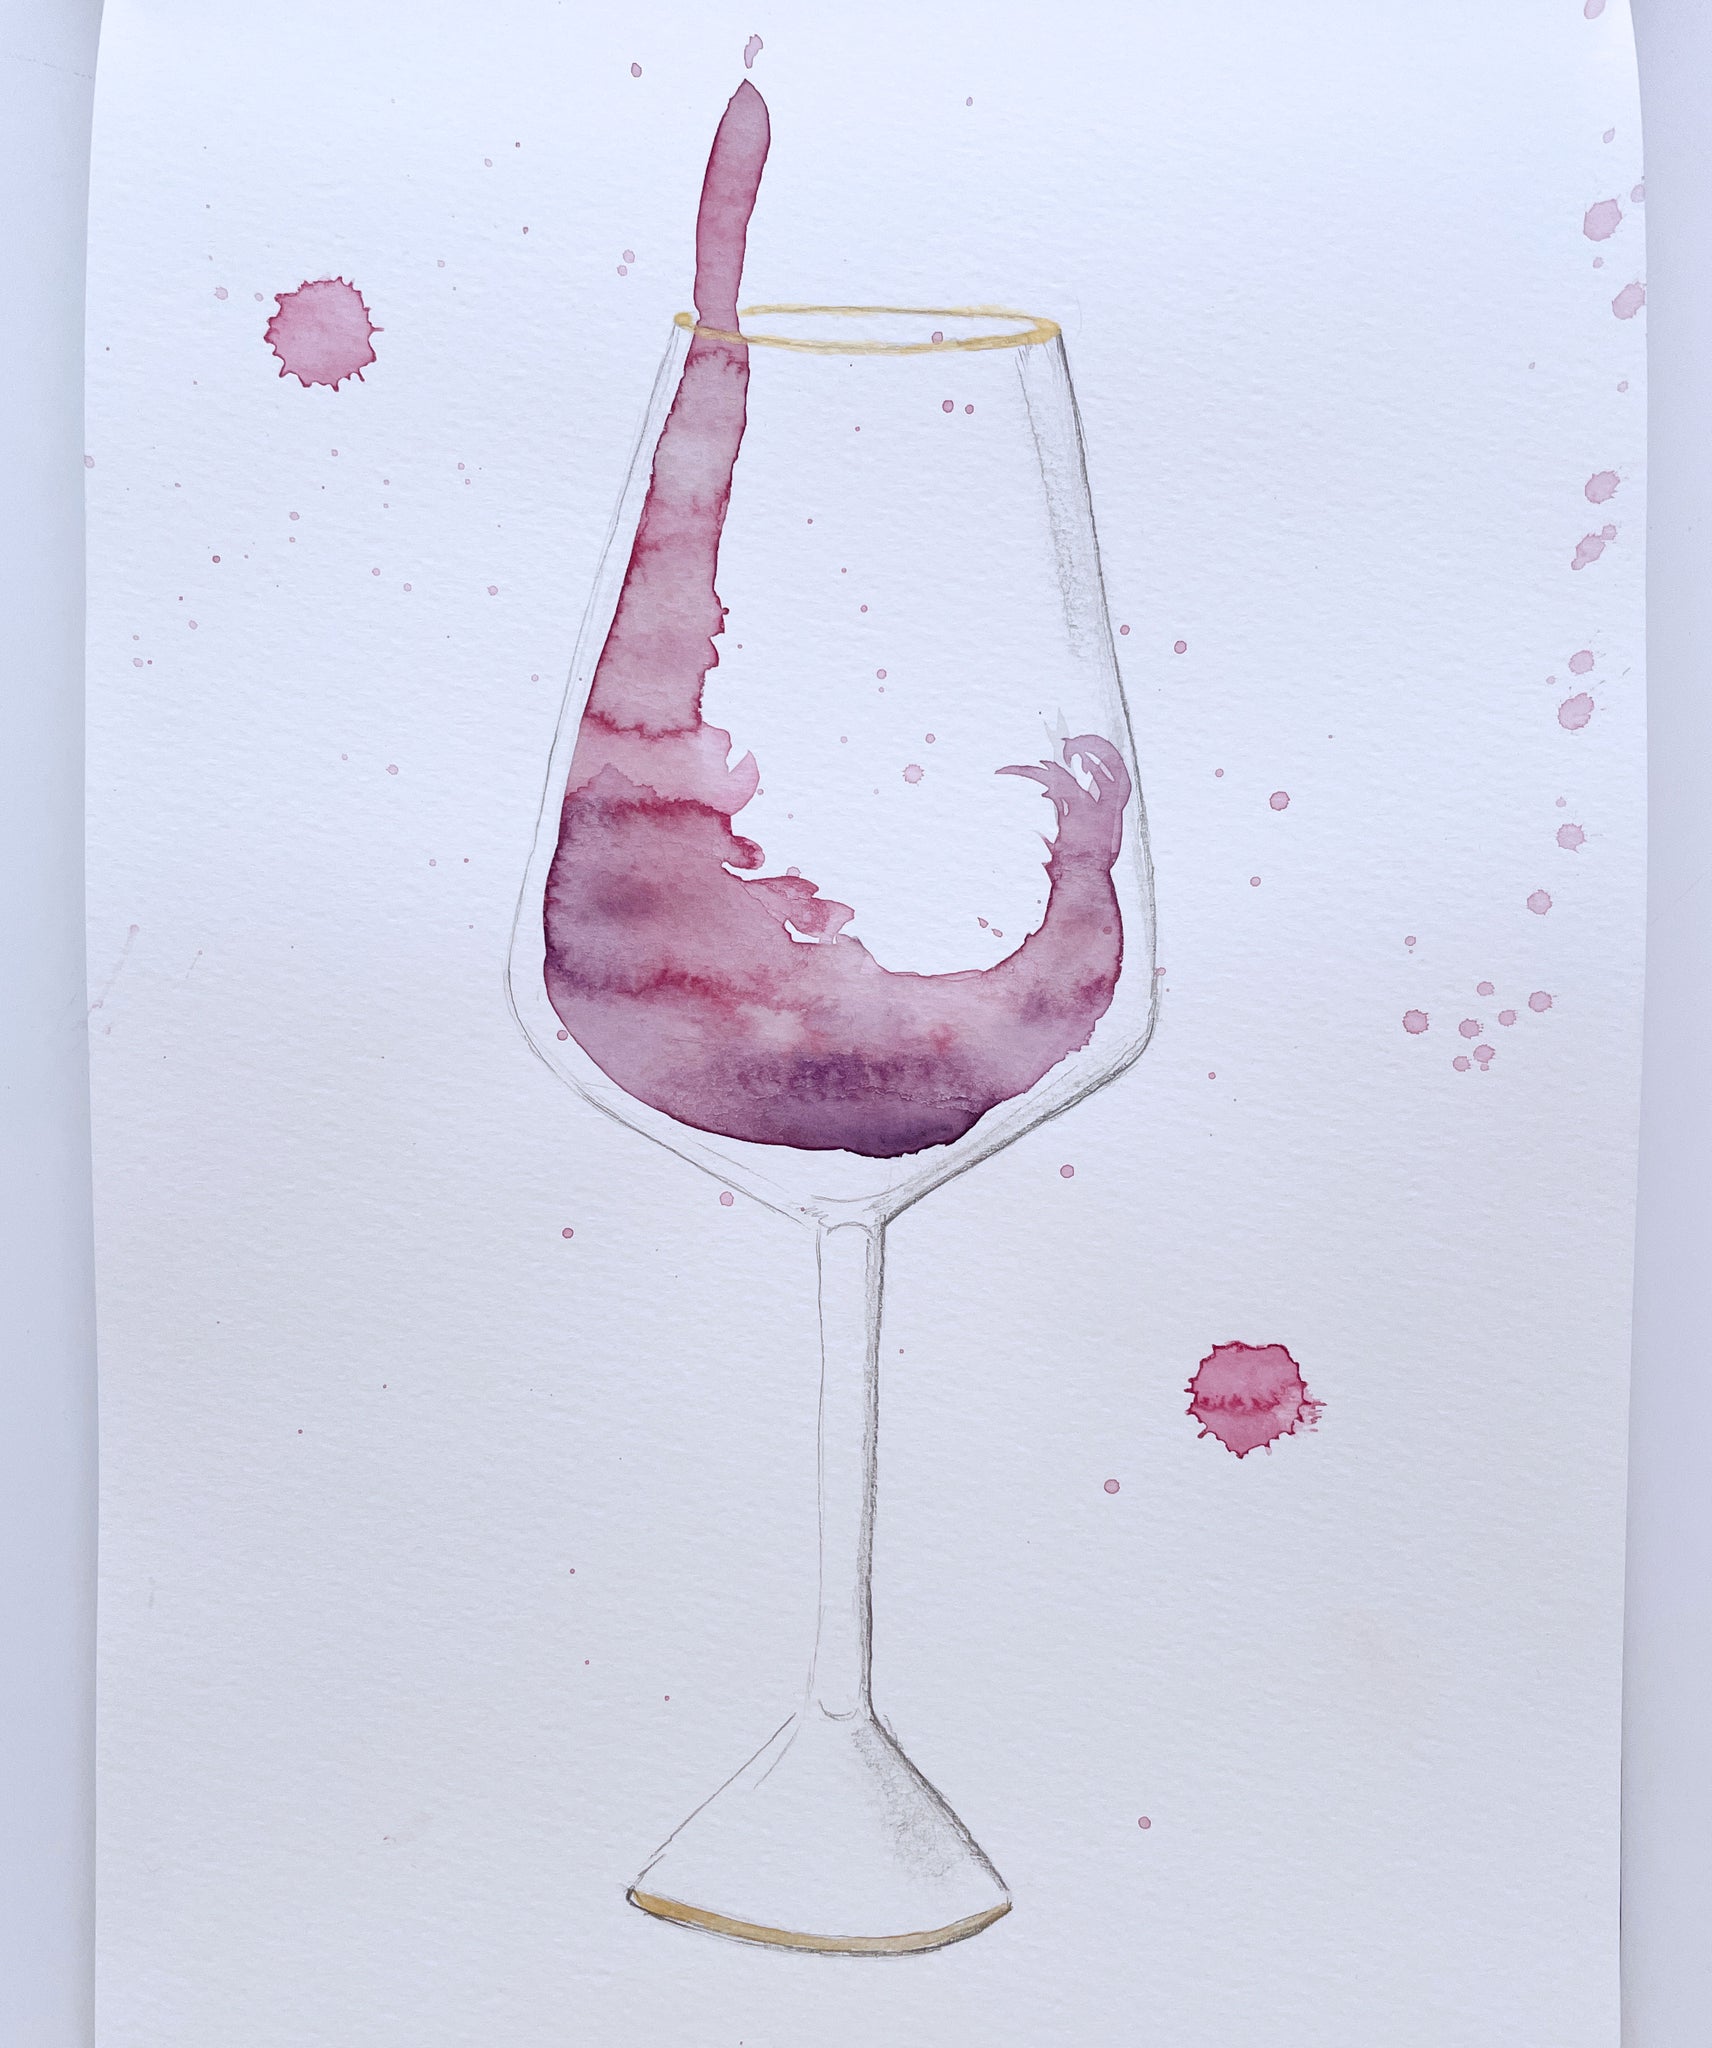 Pour the Wine Dear Original Watercolor Painting